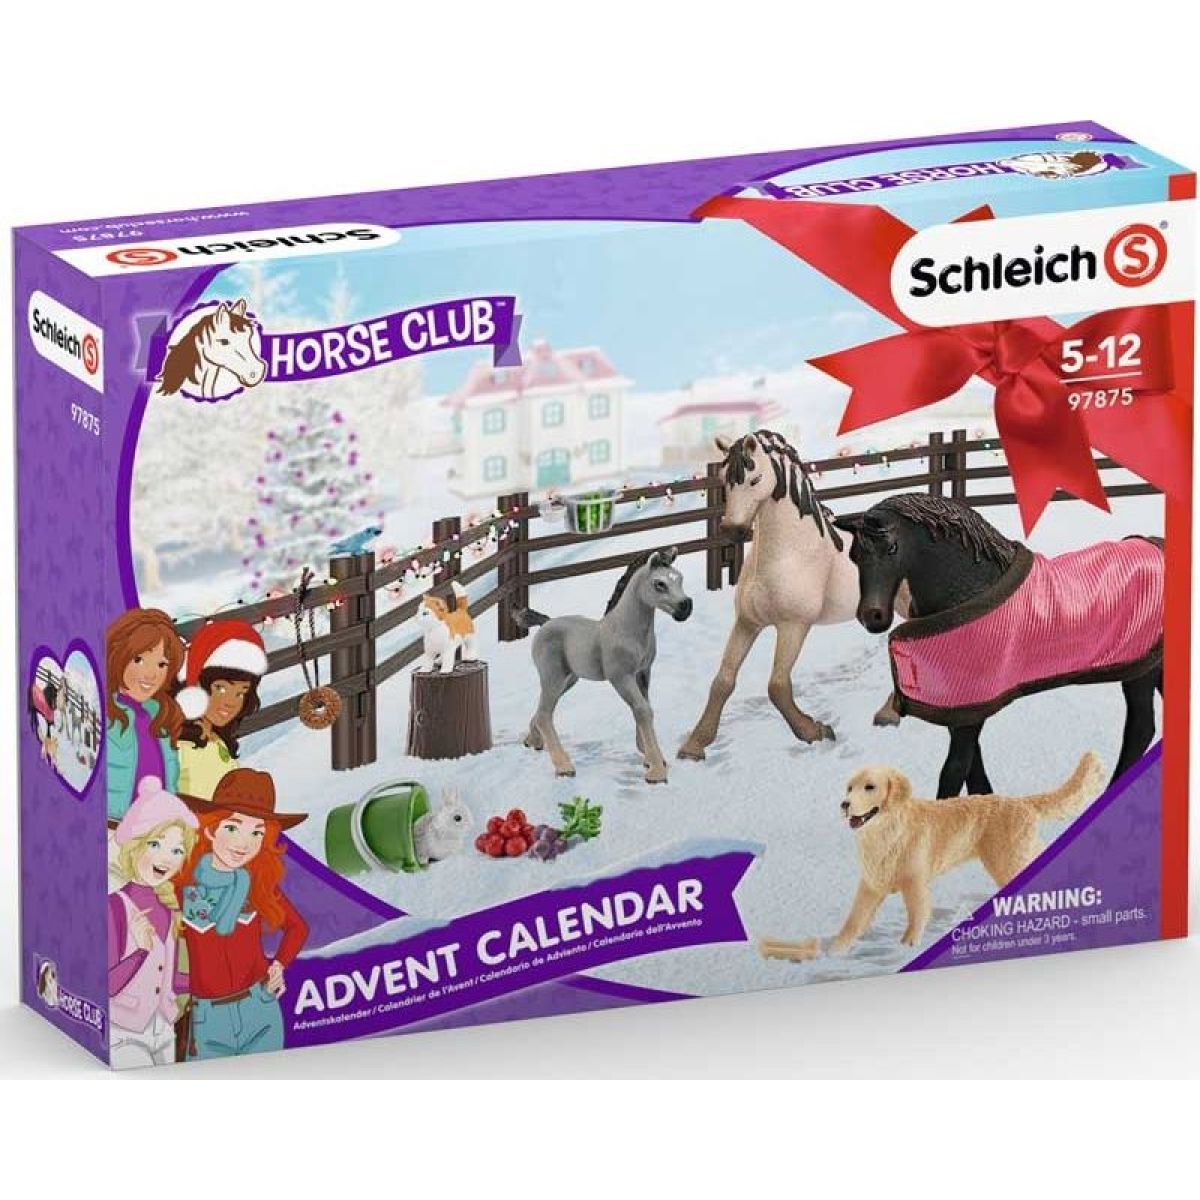 Schleich Adventný kalendár 2019 Kone - Poškodený obal